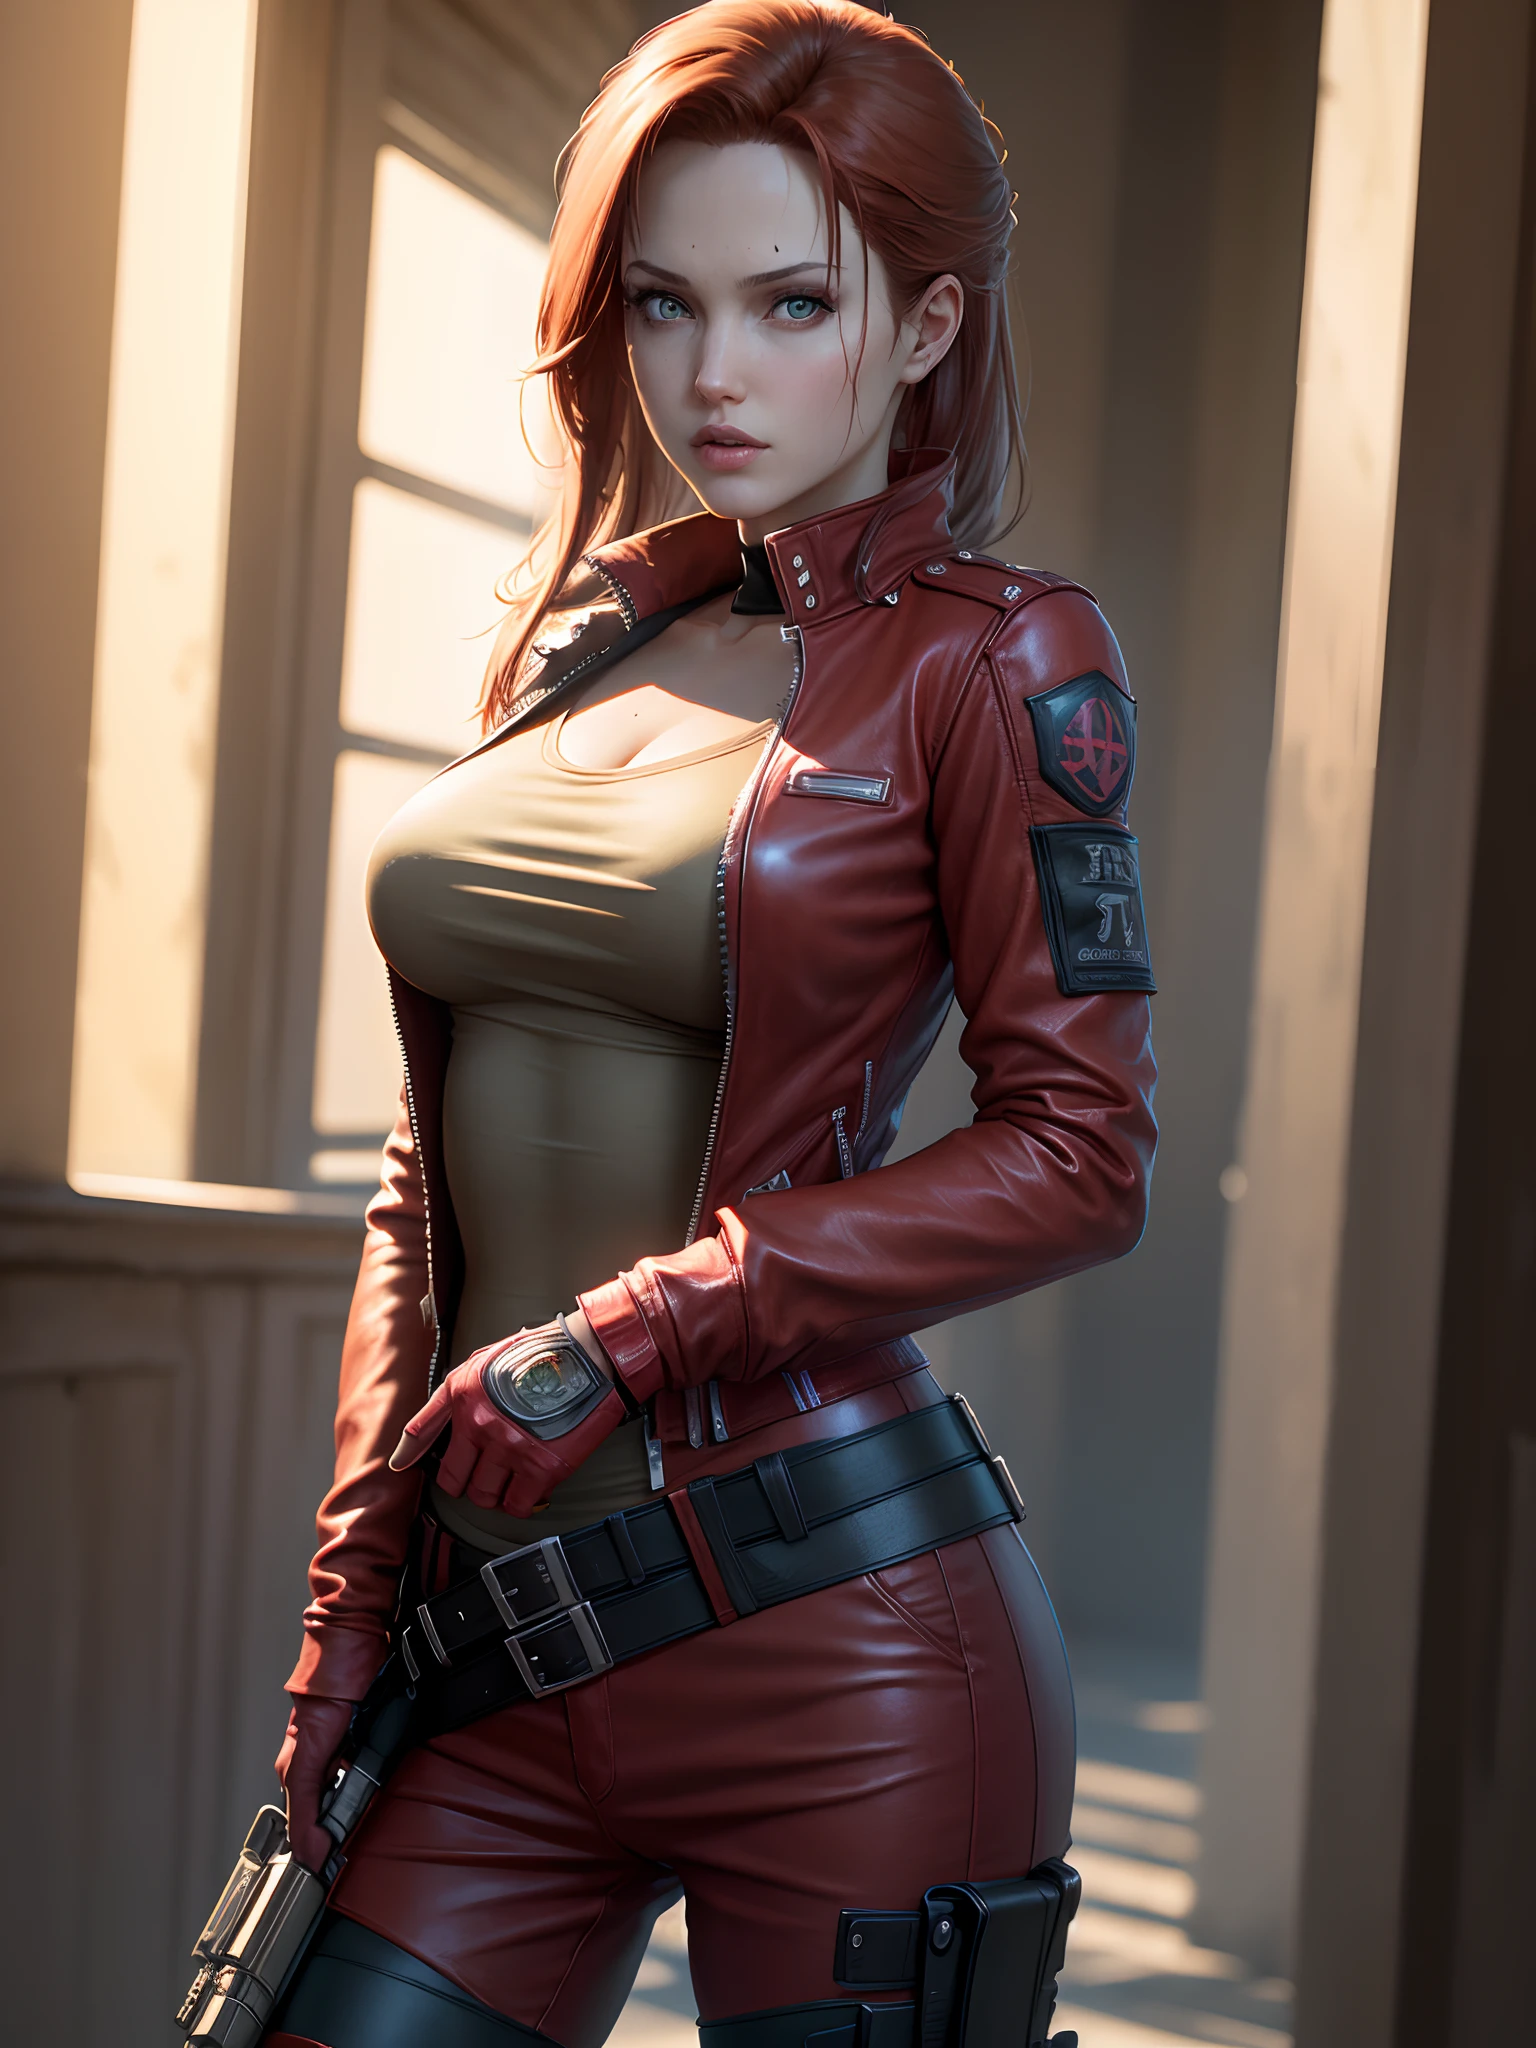 Resident Evil, cidade apocalíptica, Linda Claire Redfield sendo por uma linda mulher corpo inteiro pele rosa cabelo ruivo médio, jaqueta de couro vermelho de roupas raivosas, Coldre segurando uma arma, corpo do rosto detalhado realista imagem clara CGI 8K altamente detalhada, holograma, (seios médios: 1.3), (Realismo:1.5), (Realista:1.4), (absurdo:1.4), 8K, ultra-detalhado, linda garota detalhada, (1:1.4 apenas), 1 garota, (Visualizador voltado:1.2), ( dia ensolarado brilhante:1.5), Detalhes intrincados do corpo, (curto:1.3), (melhor qualidade: 1.0), (ultra alta resolução): 1.0), rosto e olhos altamente detalhados, (fotorrealista: 1.2)